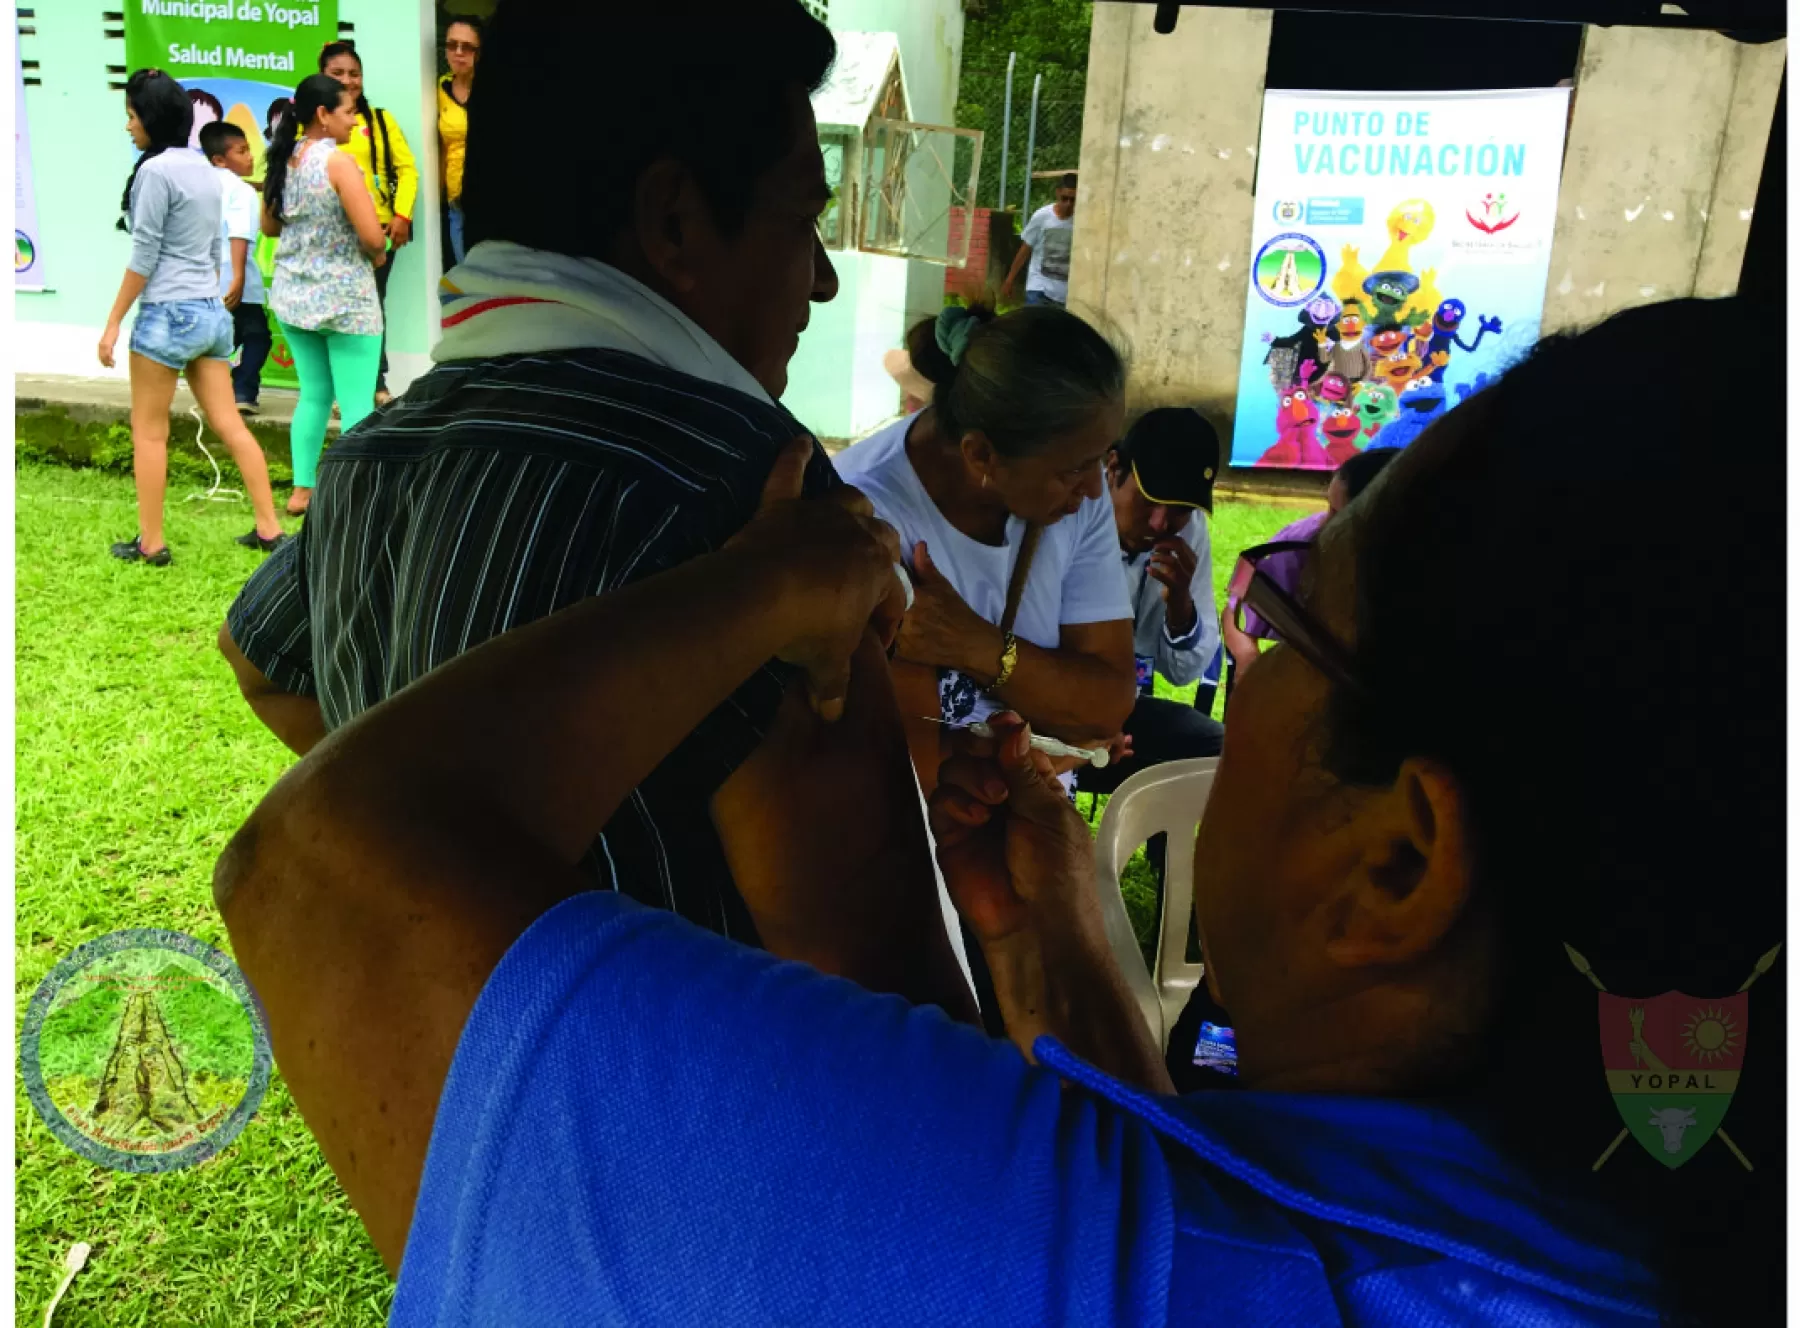 Secretaría de Salud de Yopal, realizará este sábado la Tercera Gran Jornada Nacional de Vacunación con su lema “Día de Ponerse al Día” el sábado 30 de julio de 8:00 de la mañana a 4:00 de la tarde